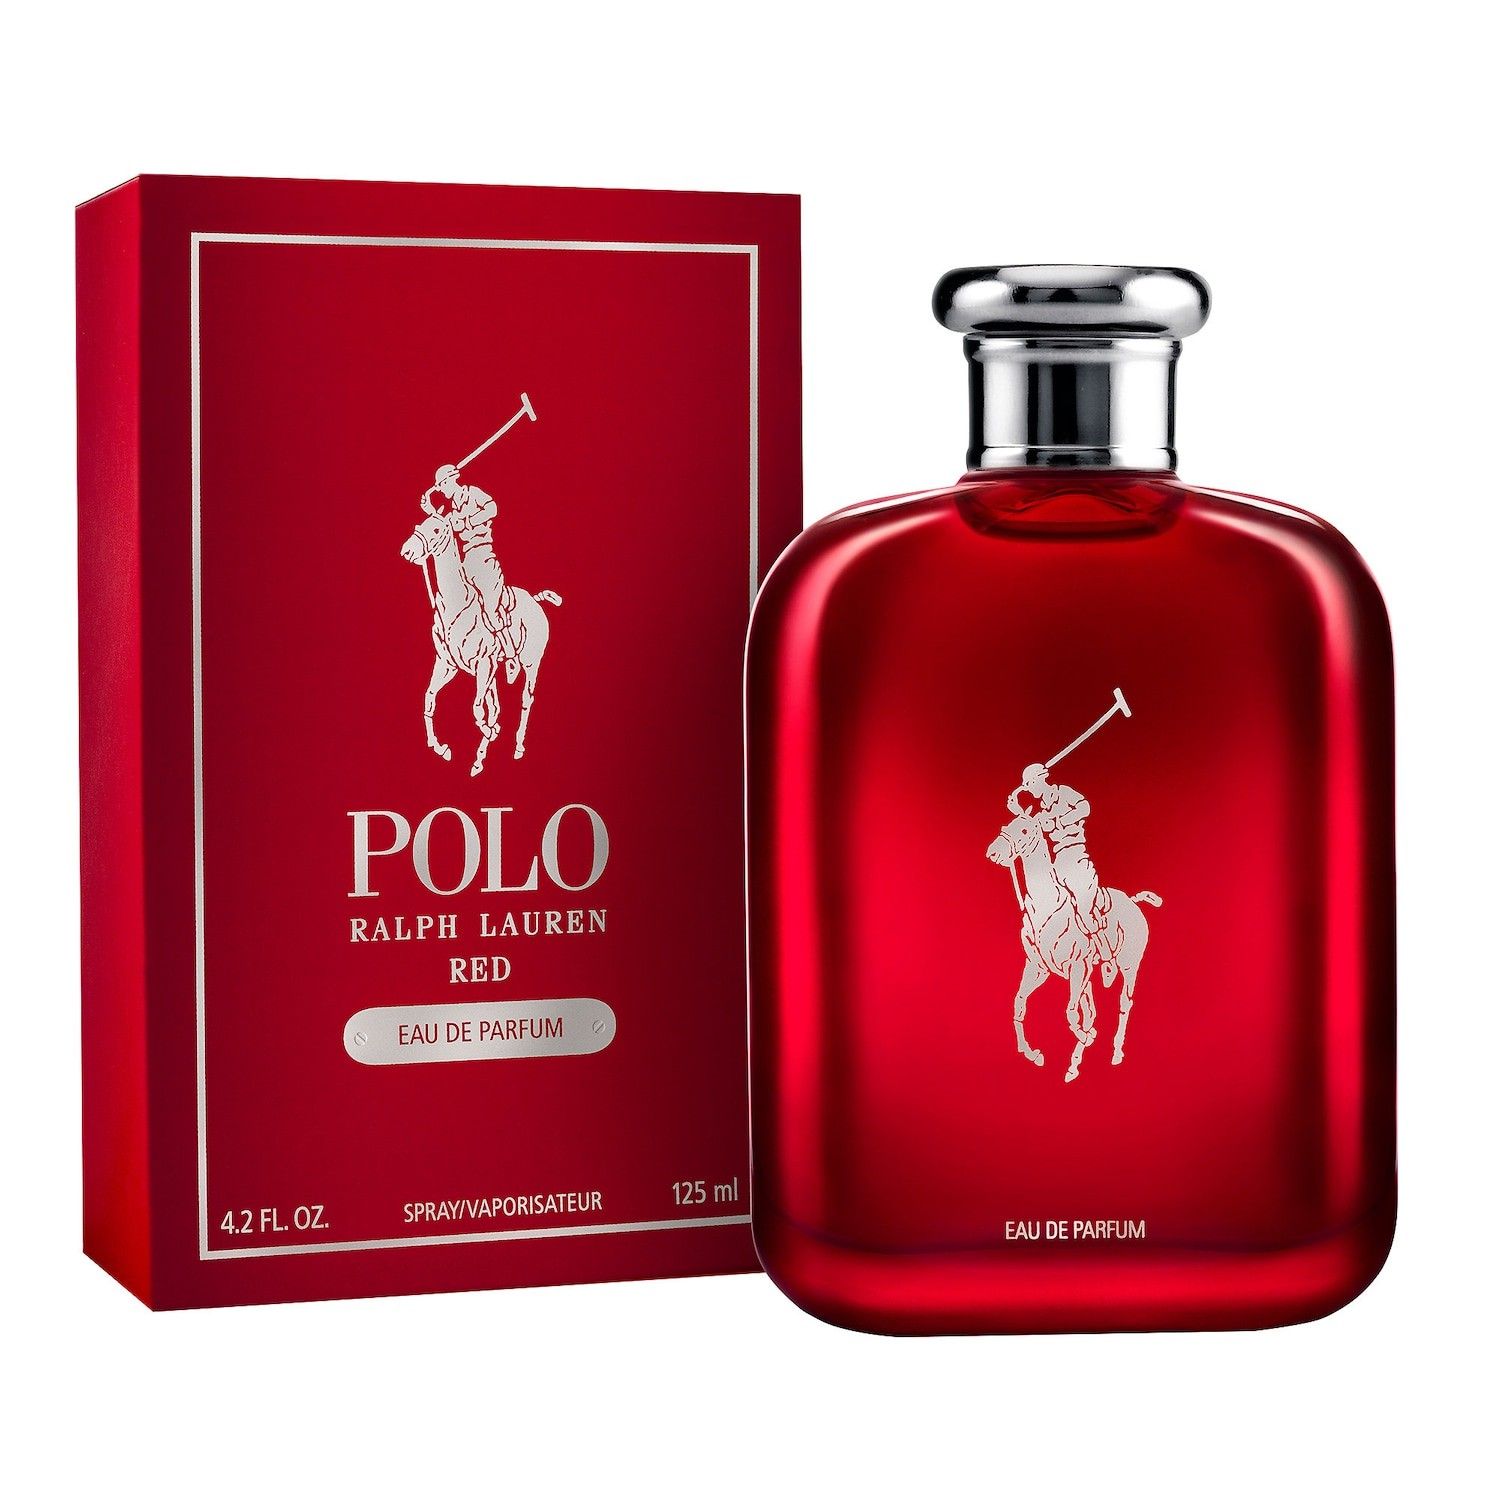 Ralph Lauren Polo Red Eau de Parfum 125ml. UNBOX